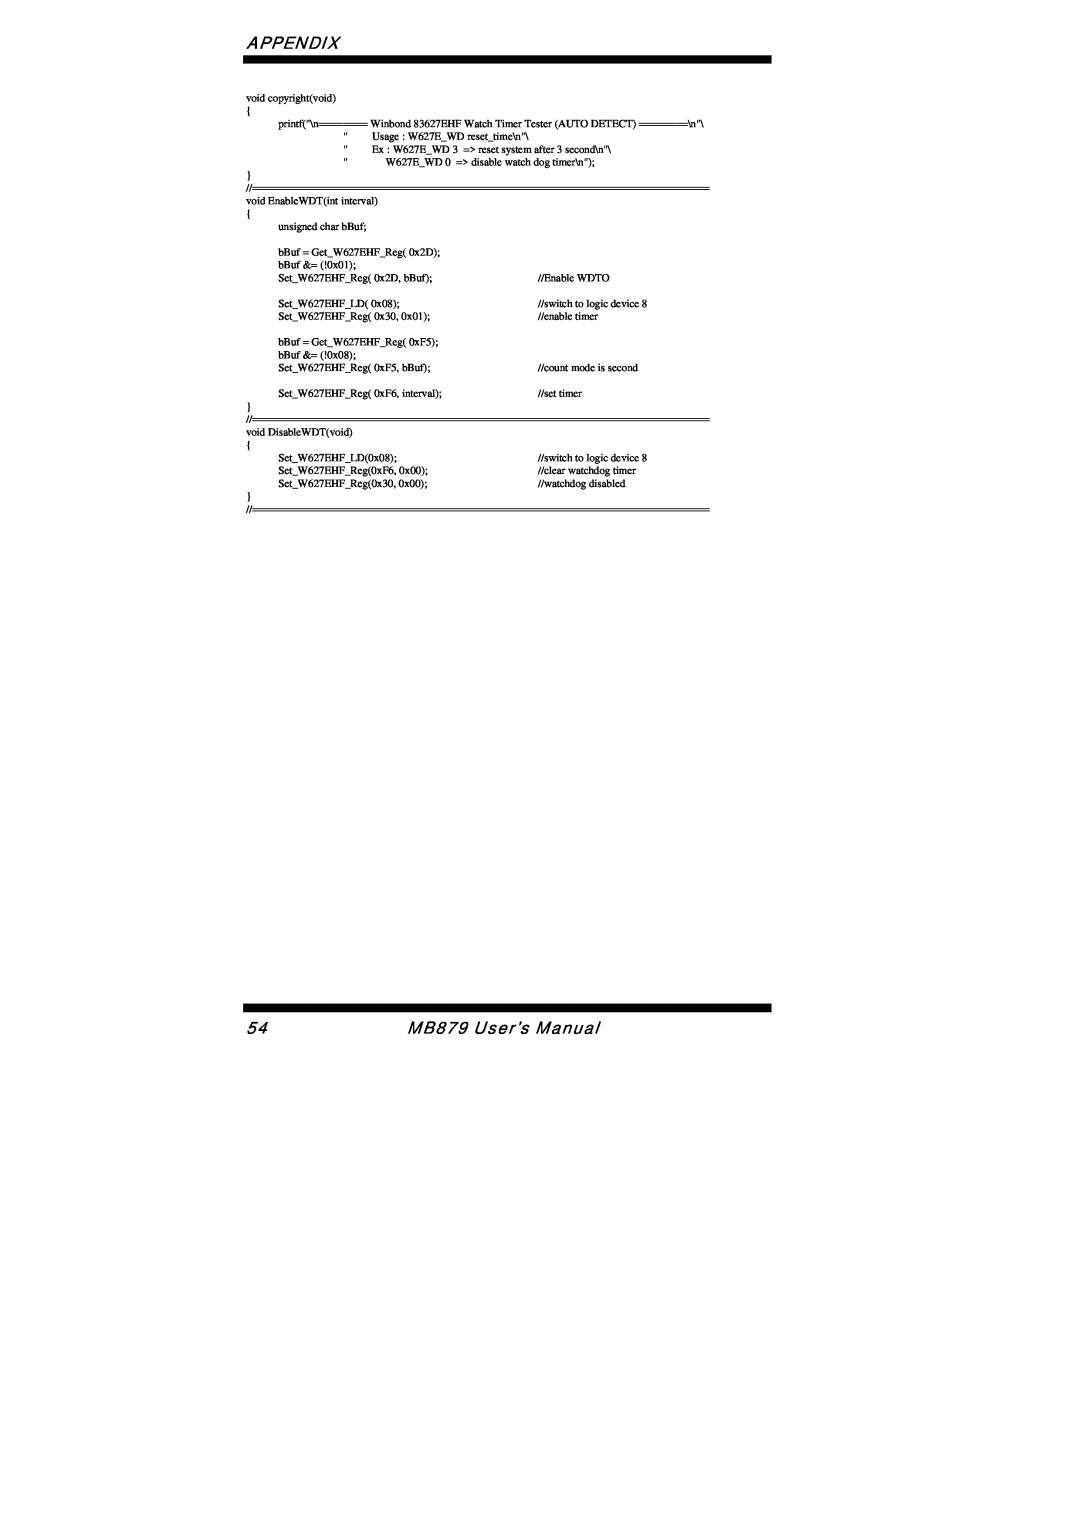 Intel user manual Appendix, MB879 User’s Manual 